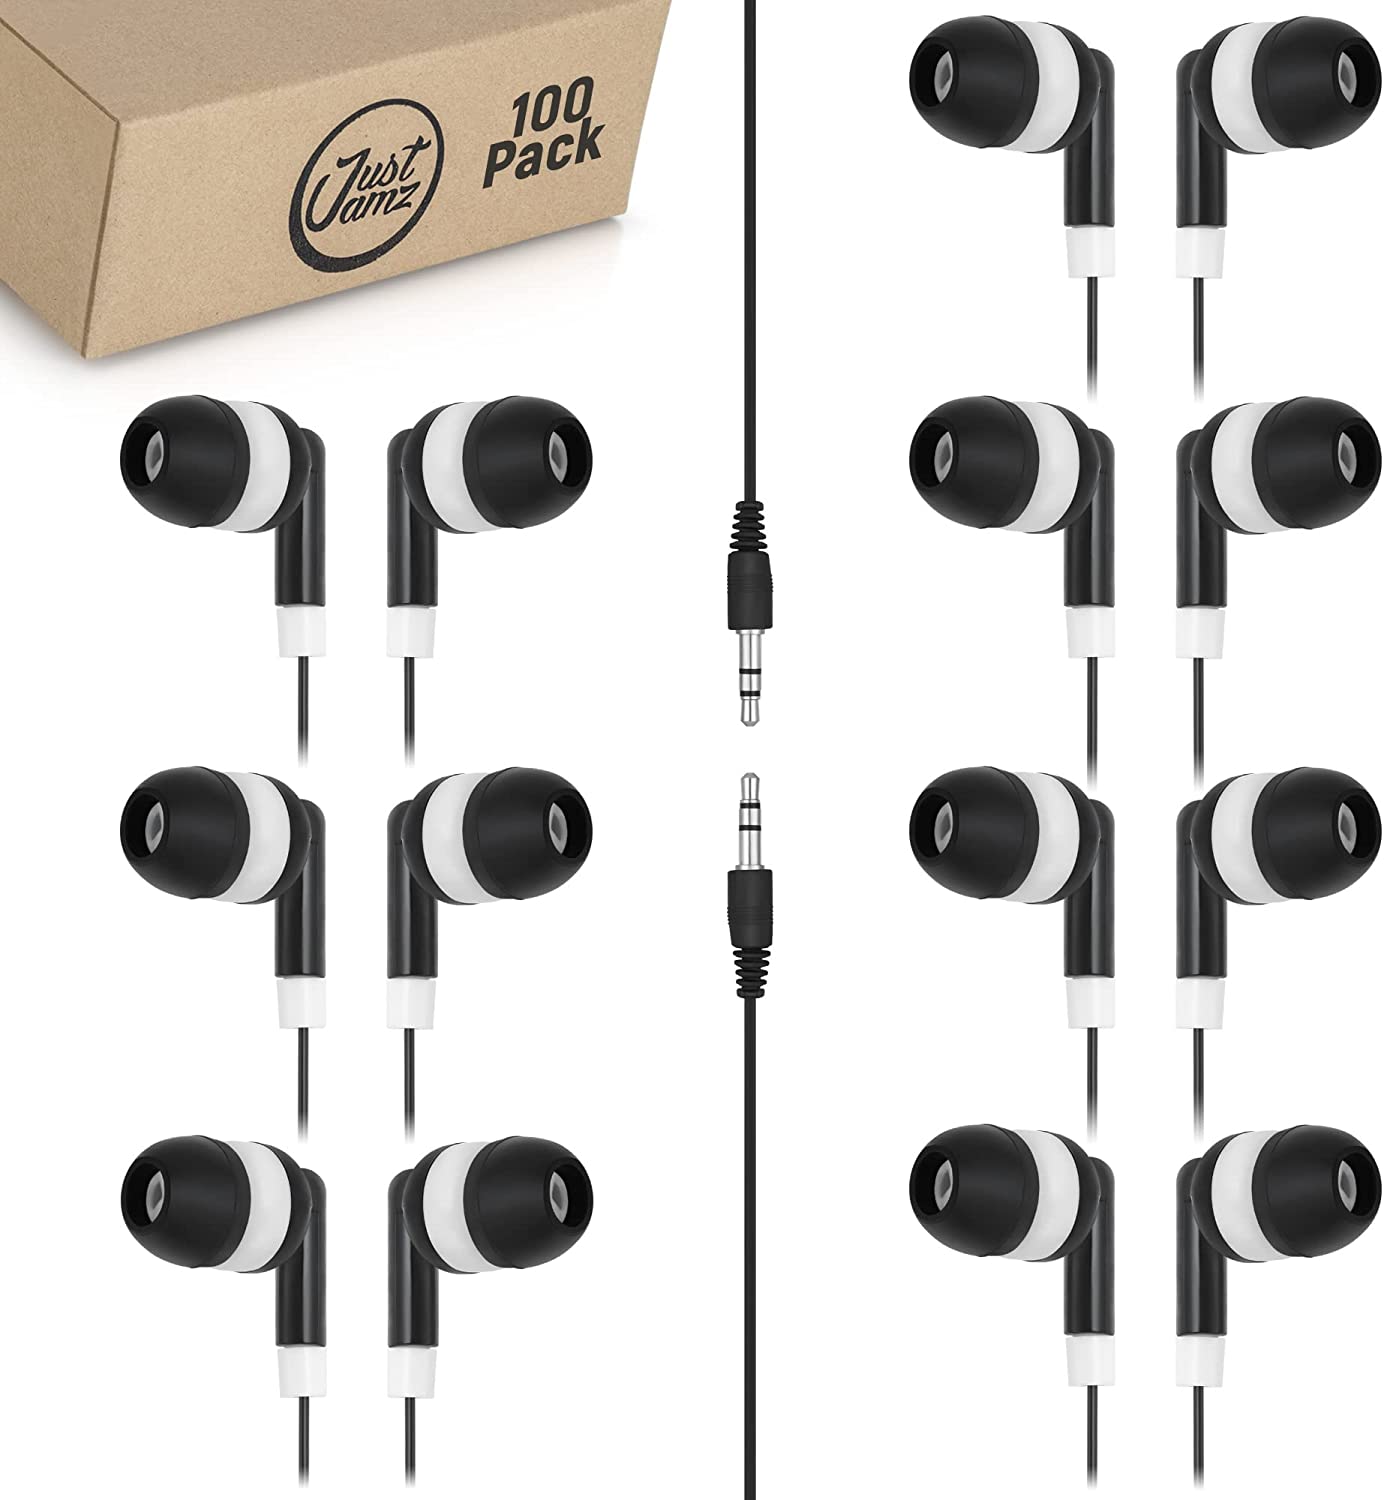 100 Pack of Basic Dot Earphones, Black (United States)